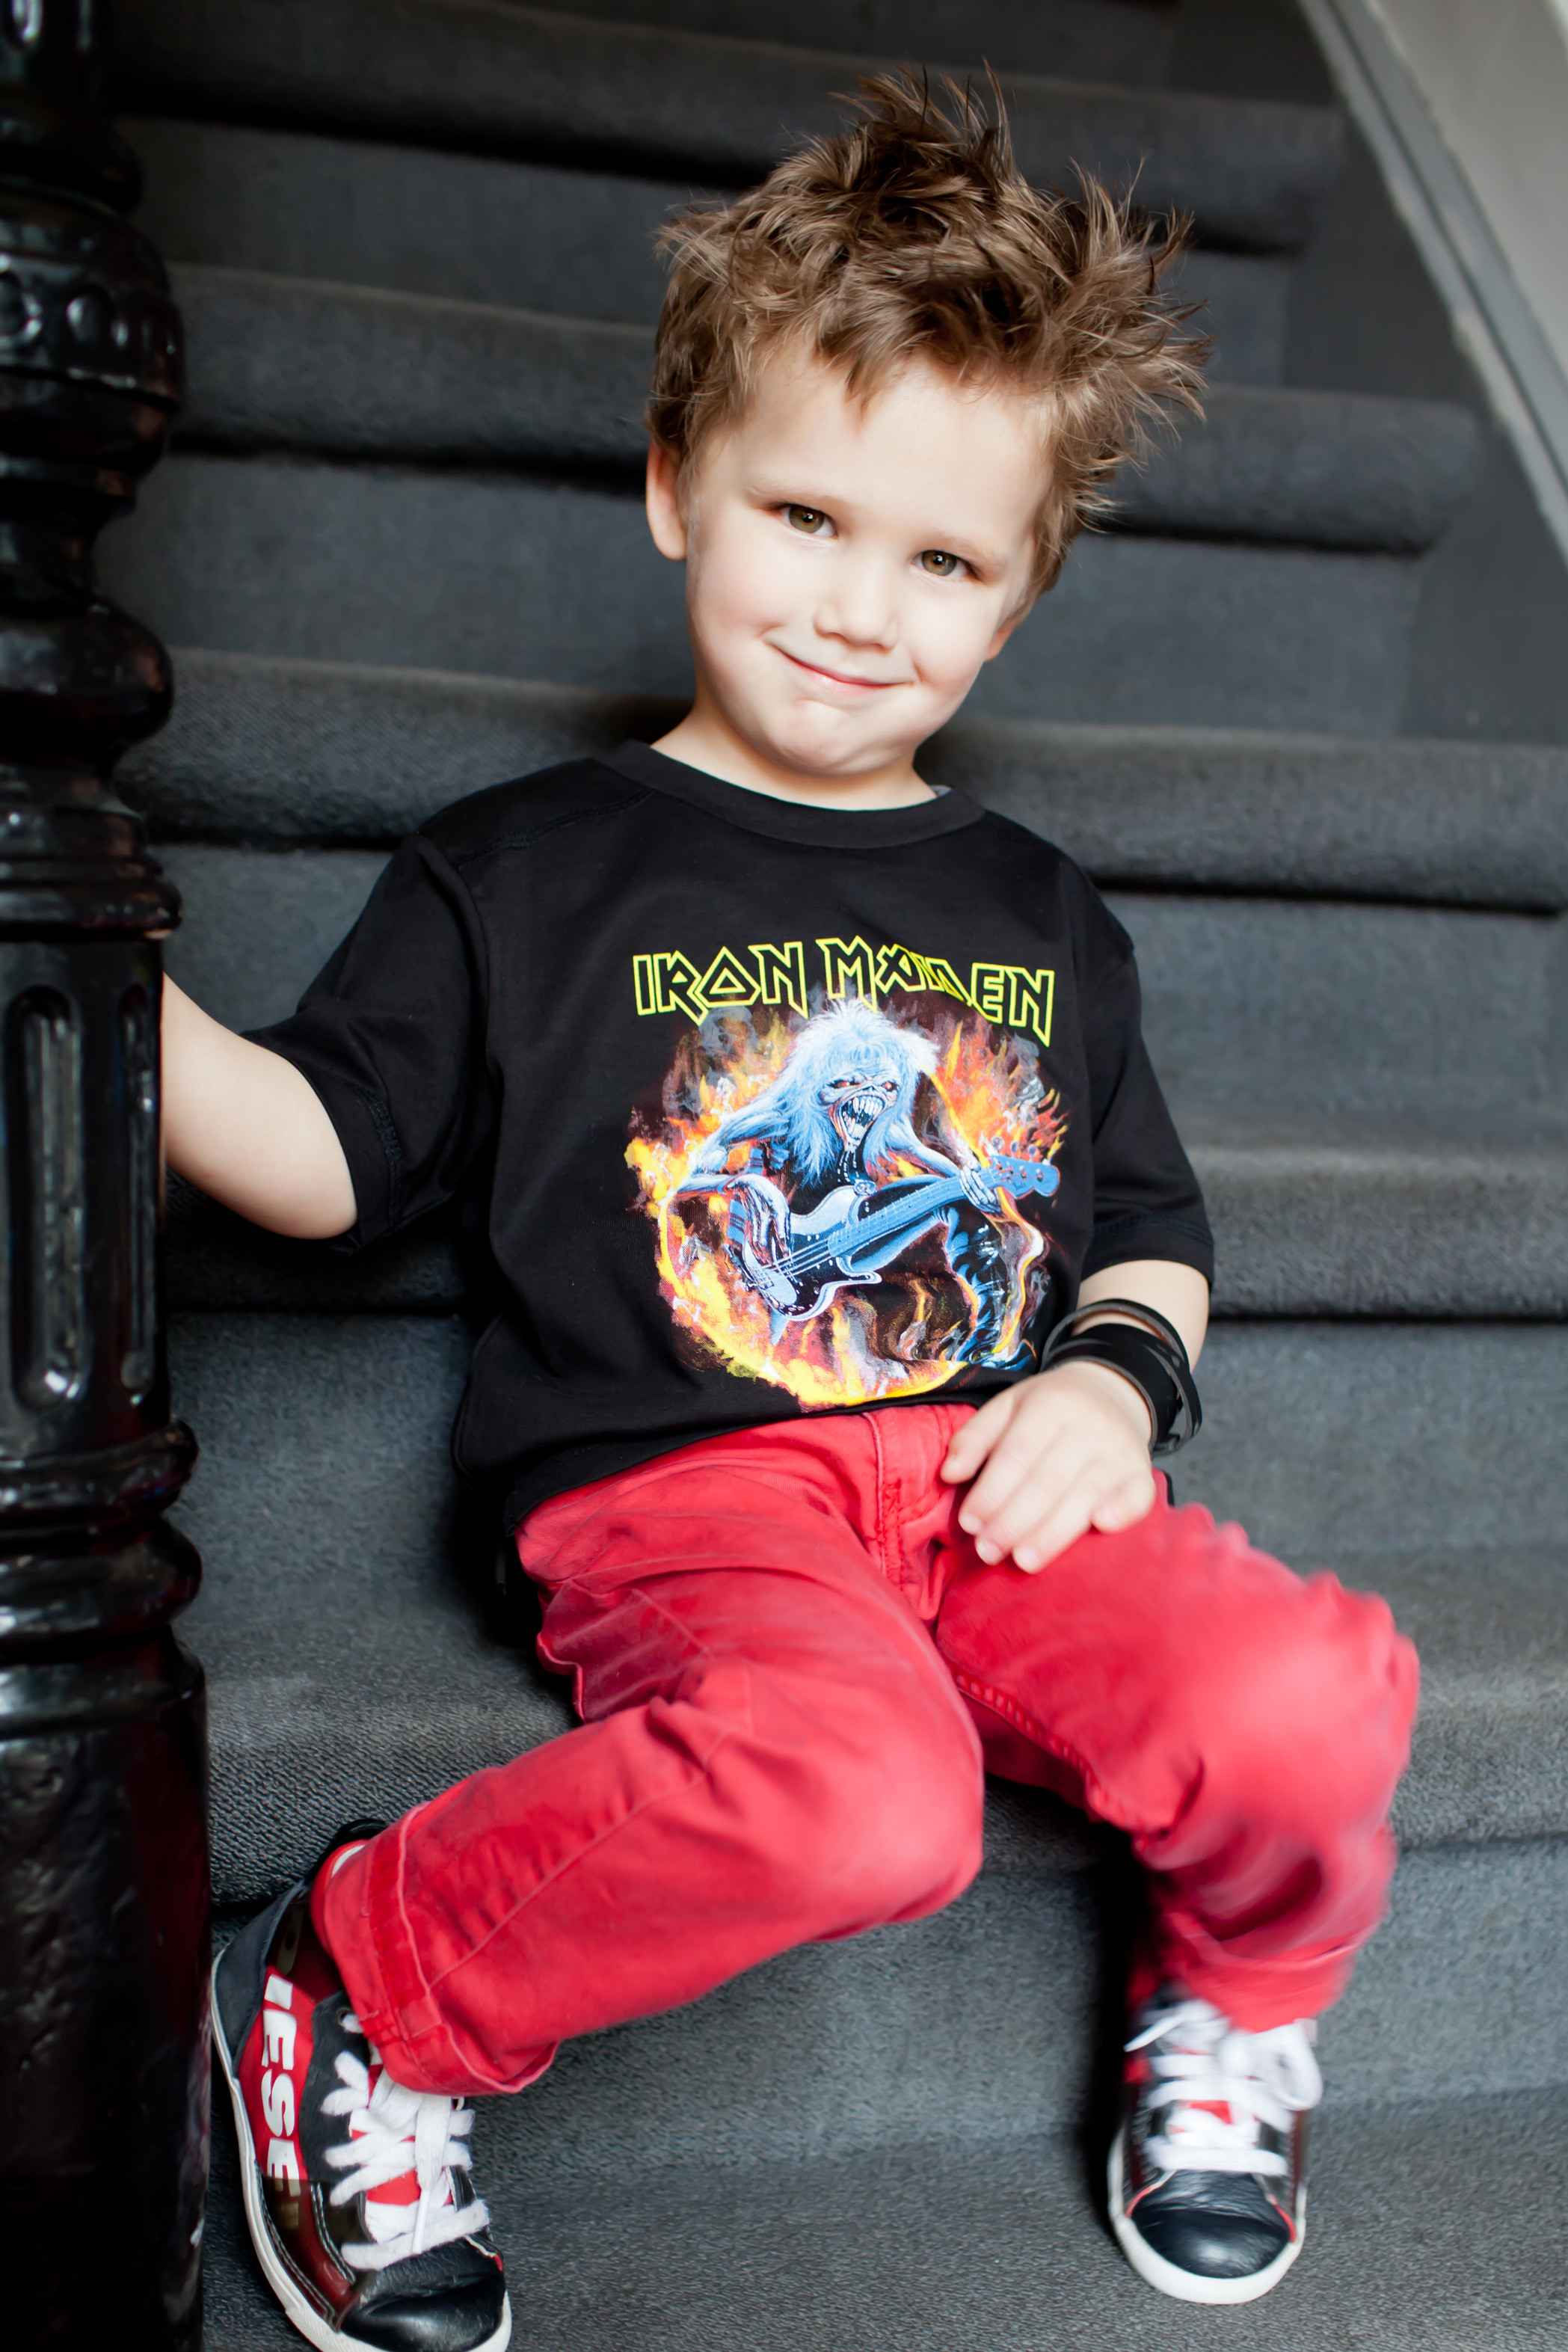 Camiseta Iron Maiden para niños FLF photoshoot